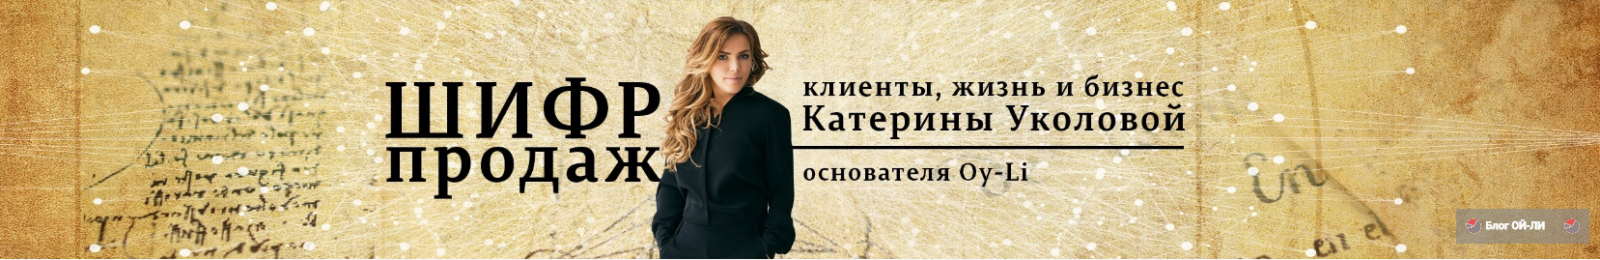 Екатерина Уколова - Основатель компании "Oy-Li"